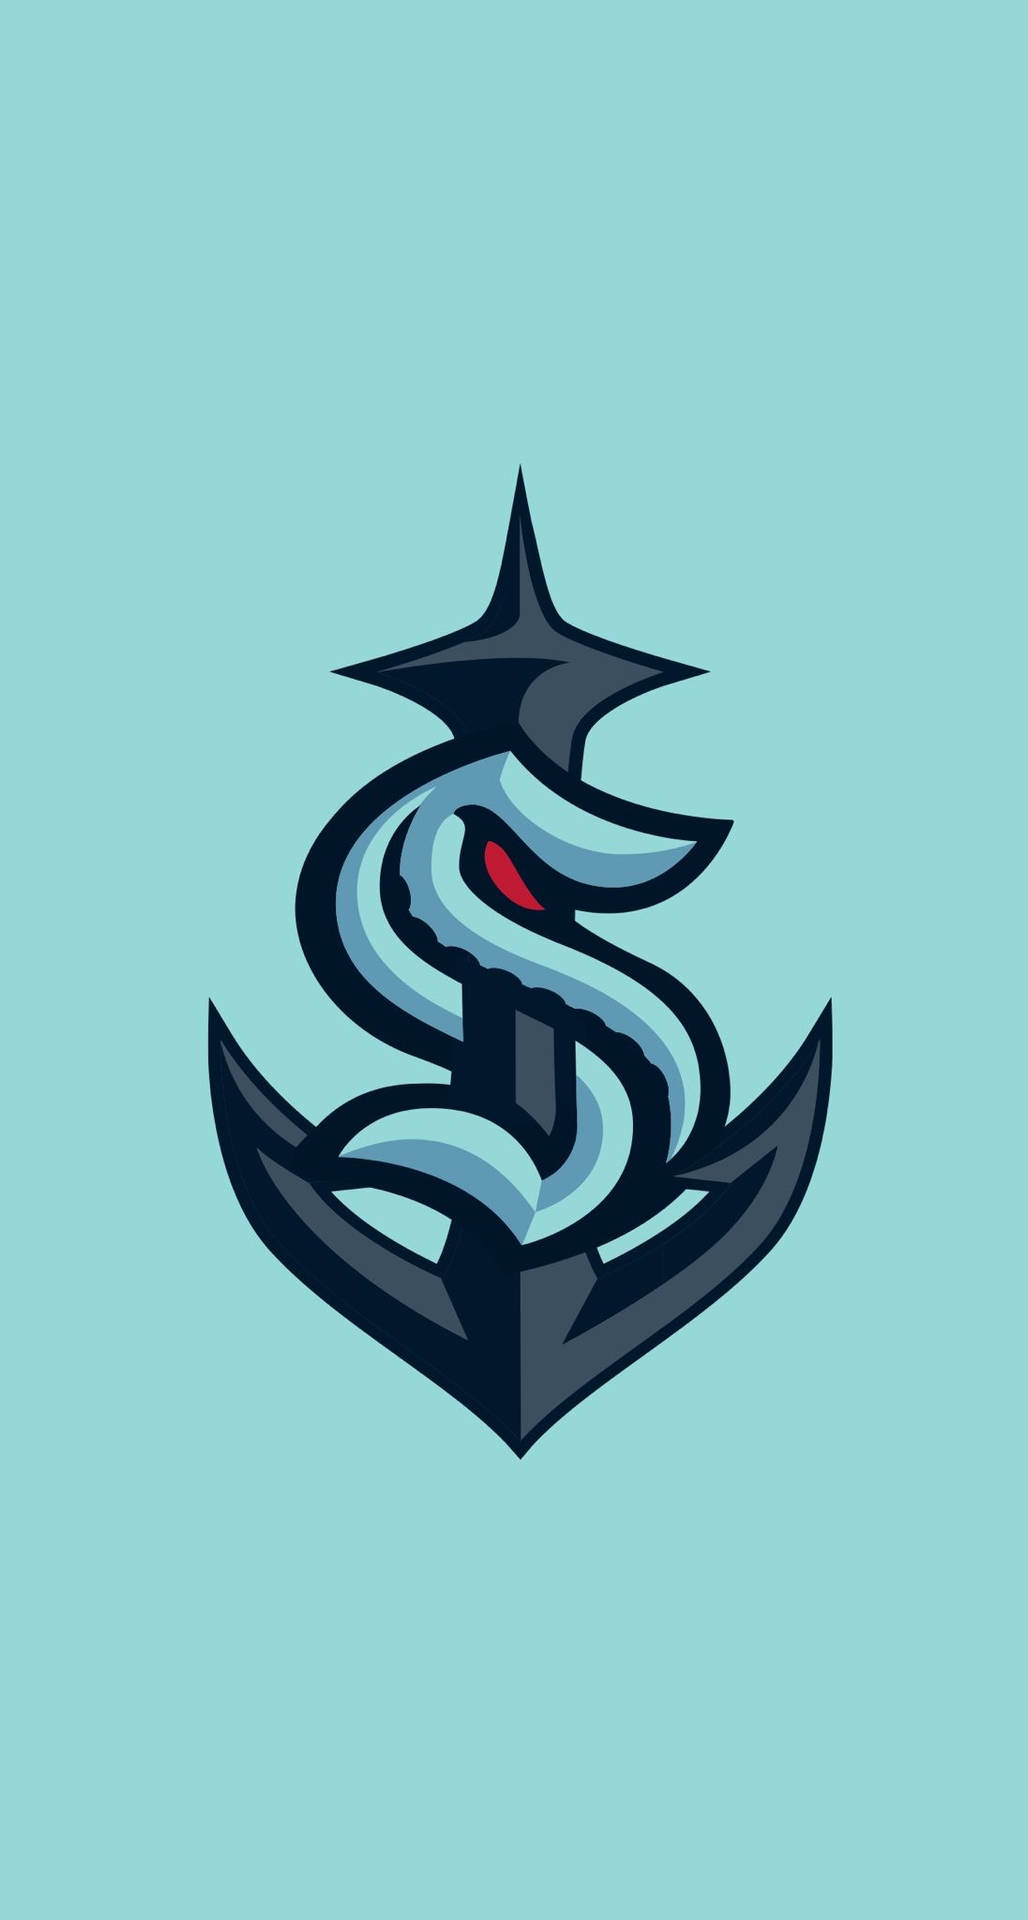 Embodying Power And Resilience - Seattle Kraken's Anchor Logo